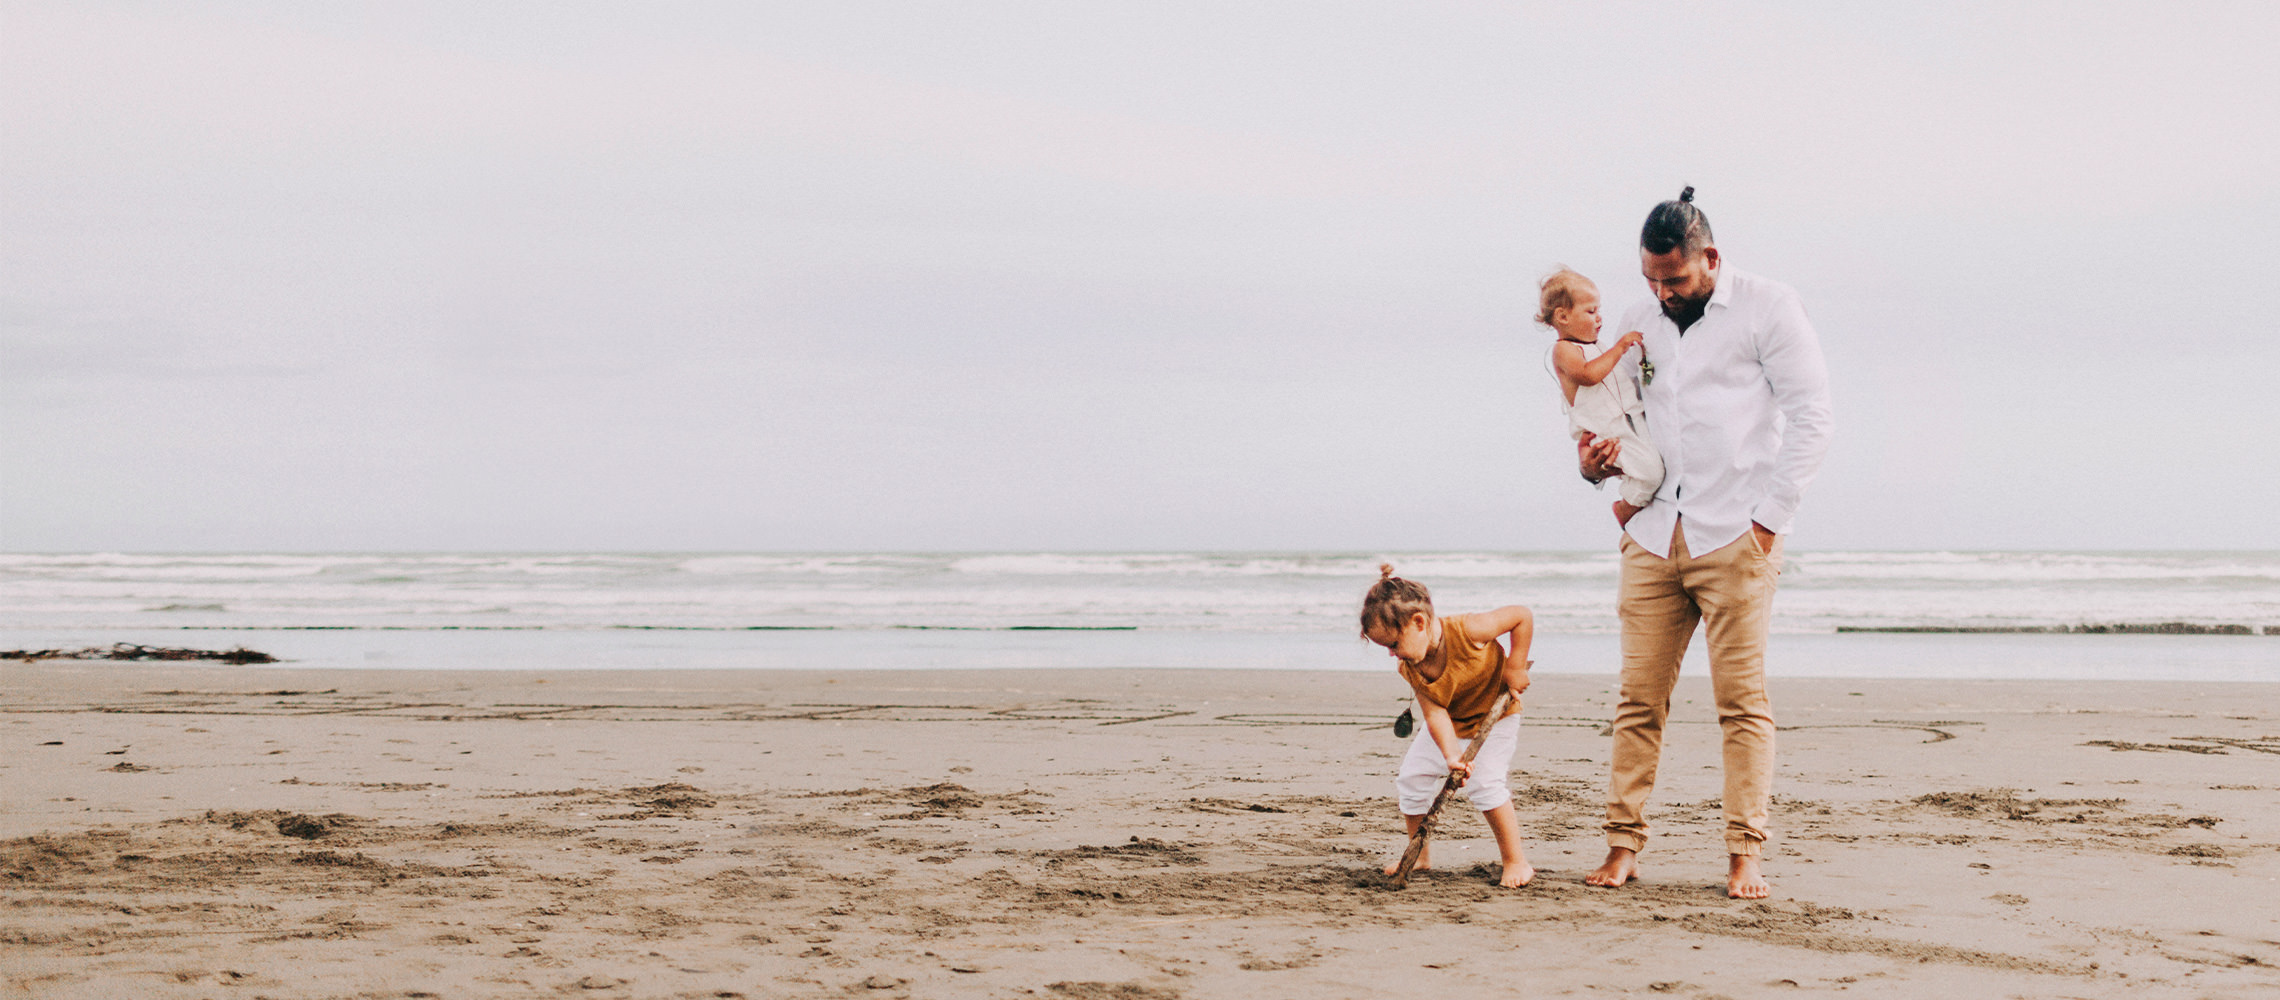 Padre con sus hijos jugando en la arena.